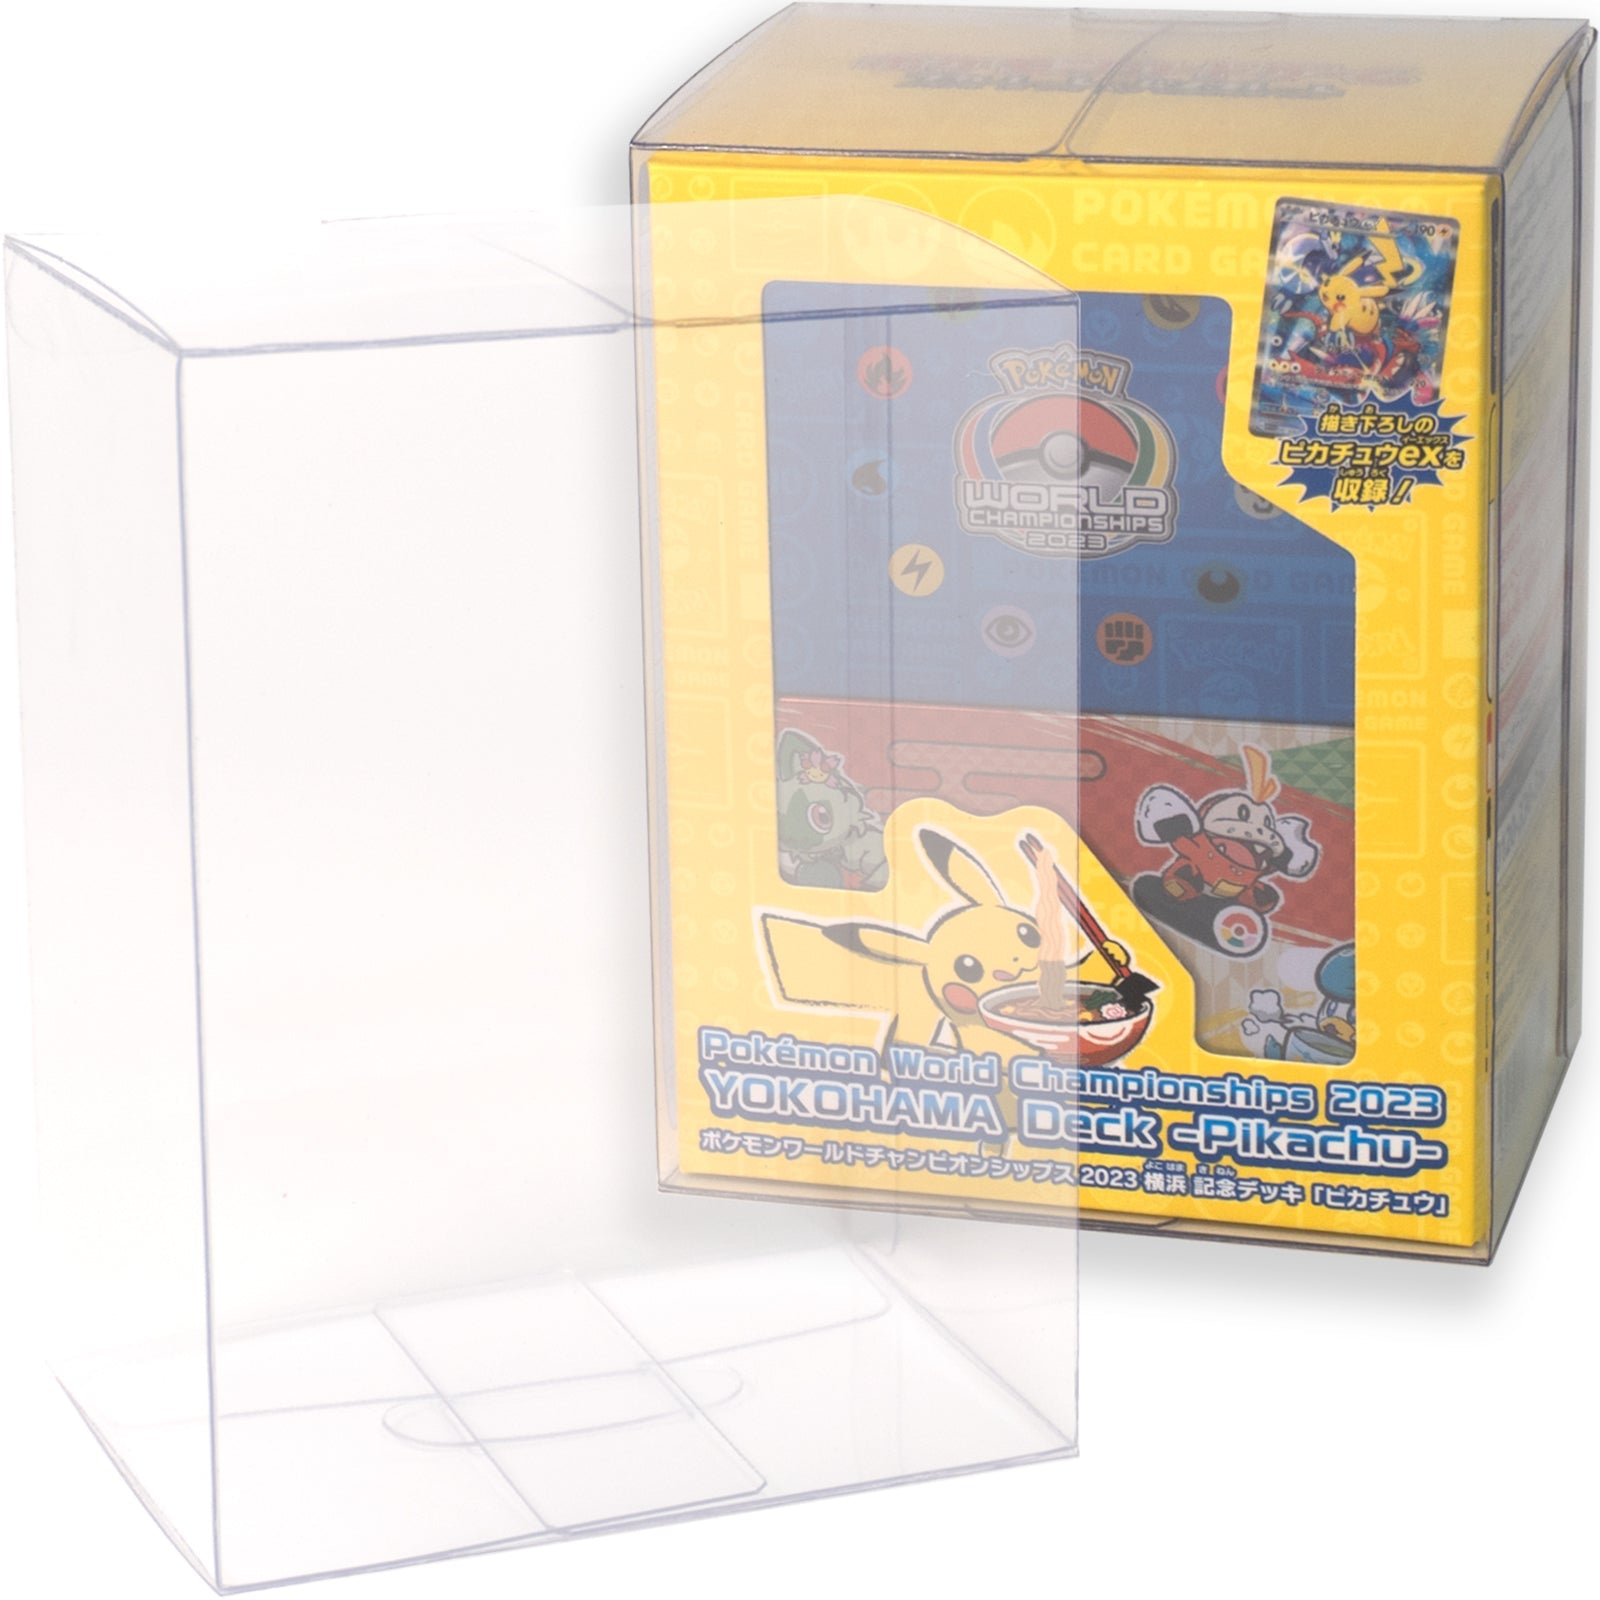 Boxx Guardian ポケモンカードBOX用 ポケモンワールドチャンピオンシップス2023横浜 記念デッキ サイズ